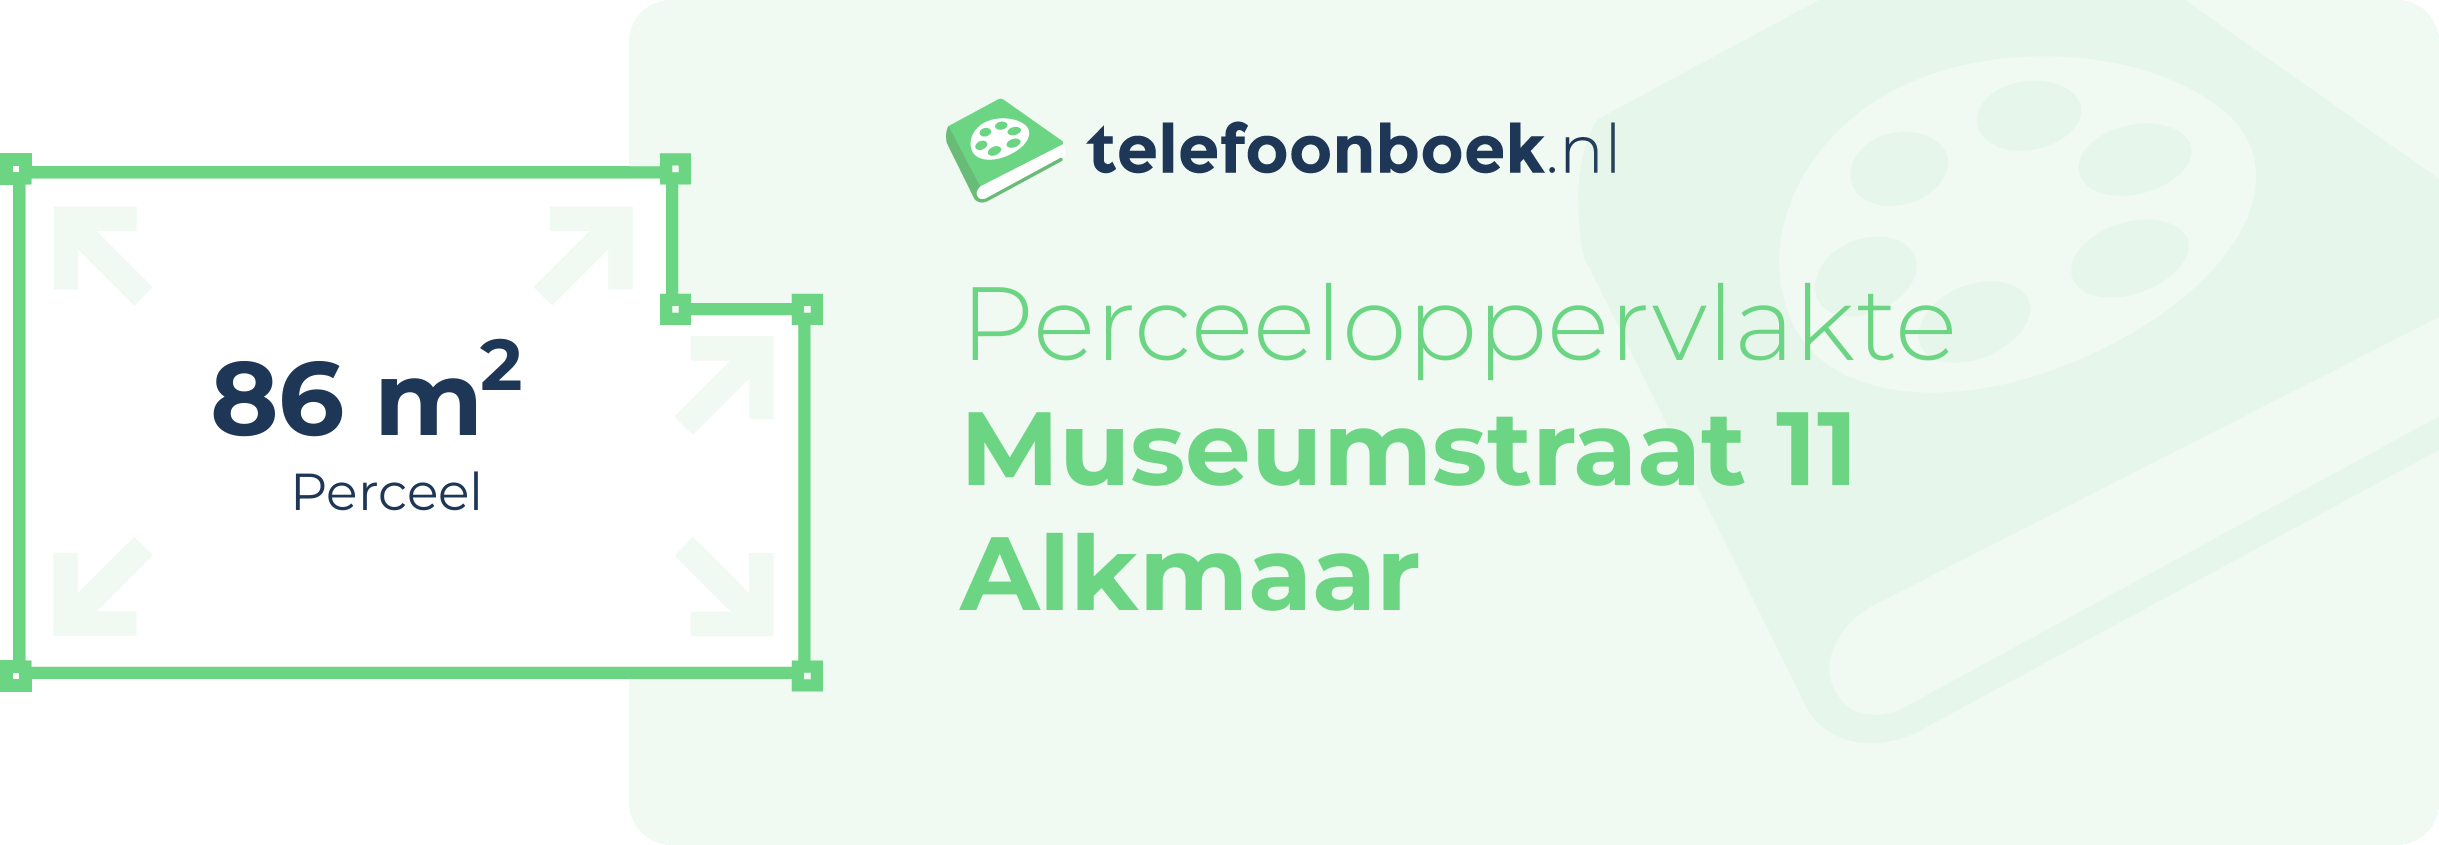 Perceeloppervlakte Museumstraat 11 Alkmaar